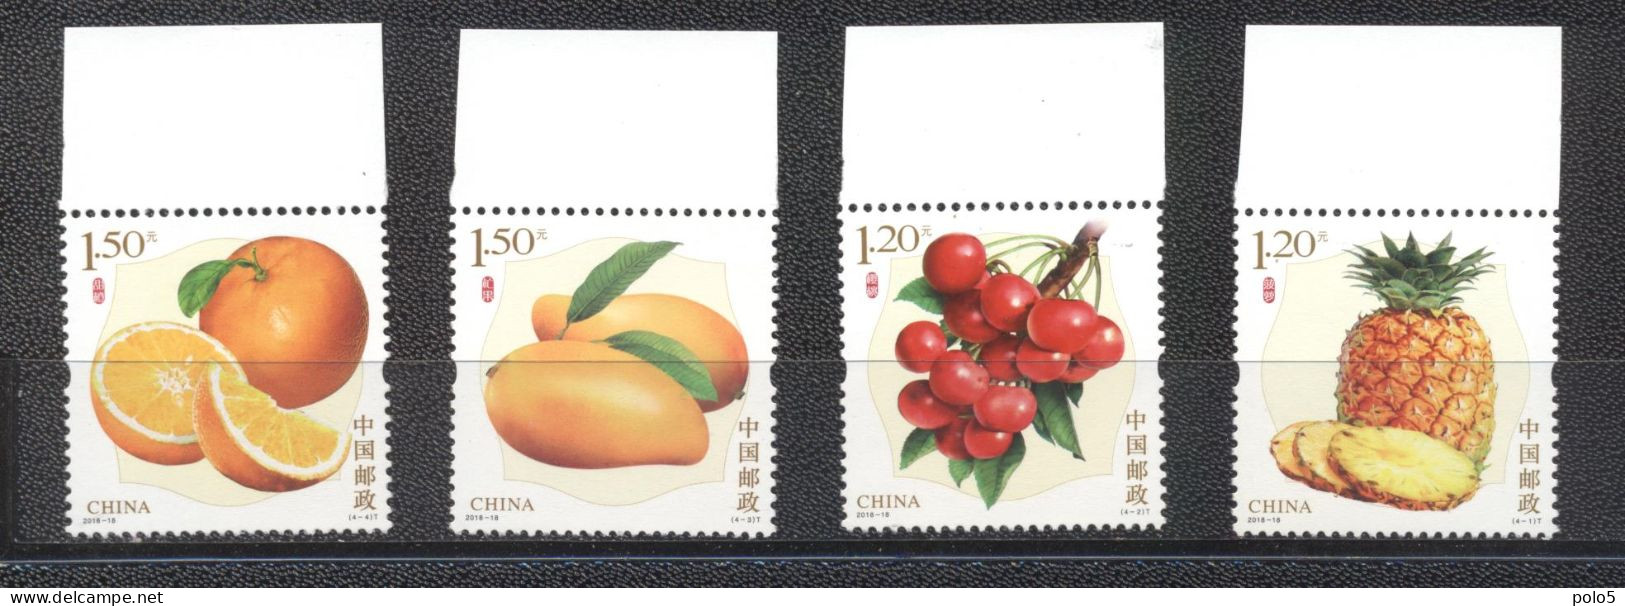 Cuba 2018-Fruits Set (4v) - Unused Stamps